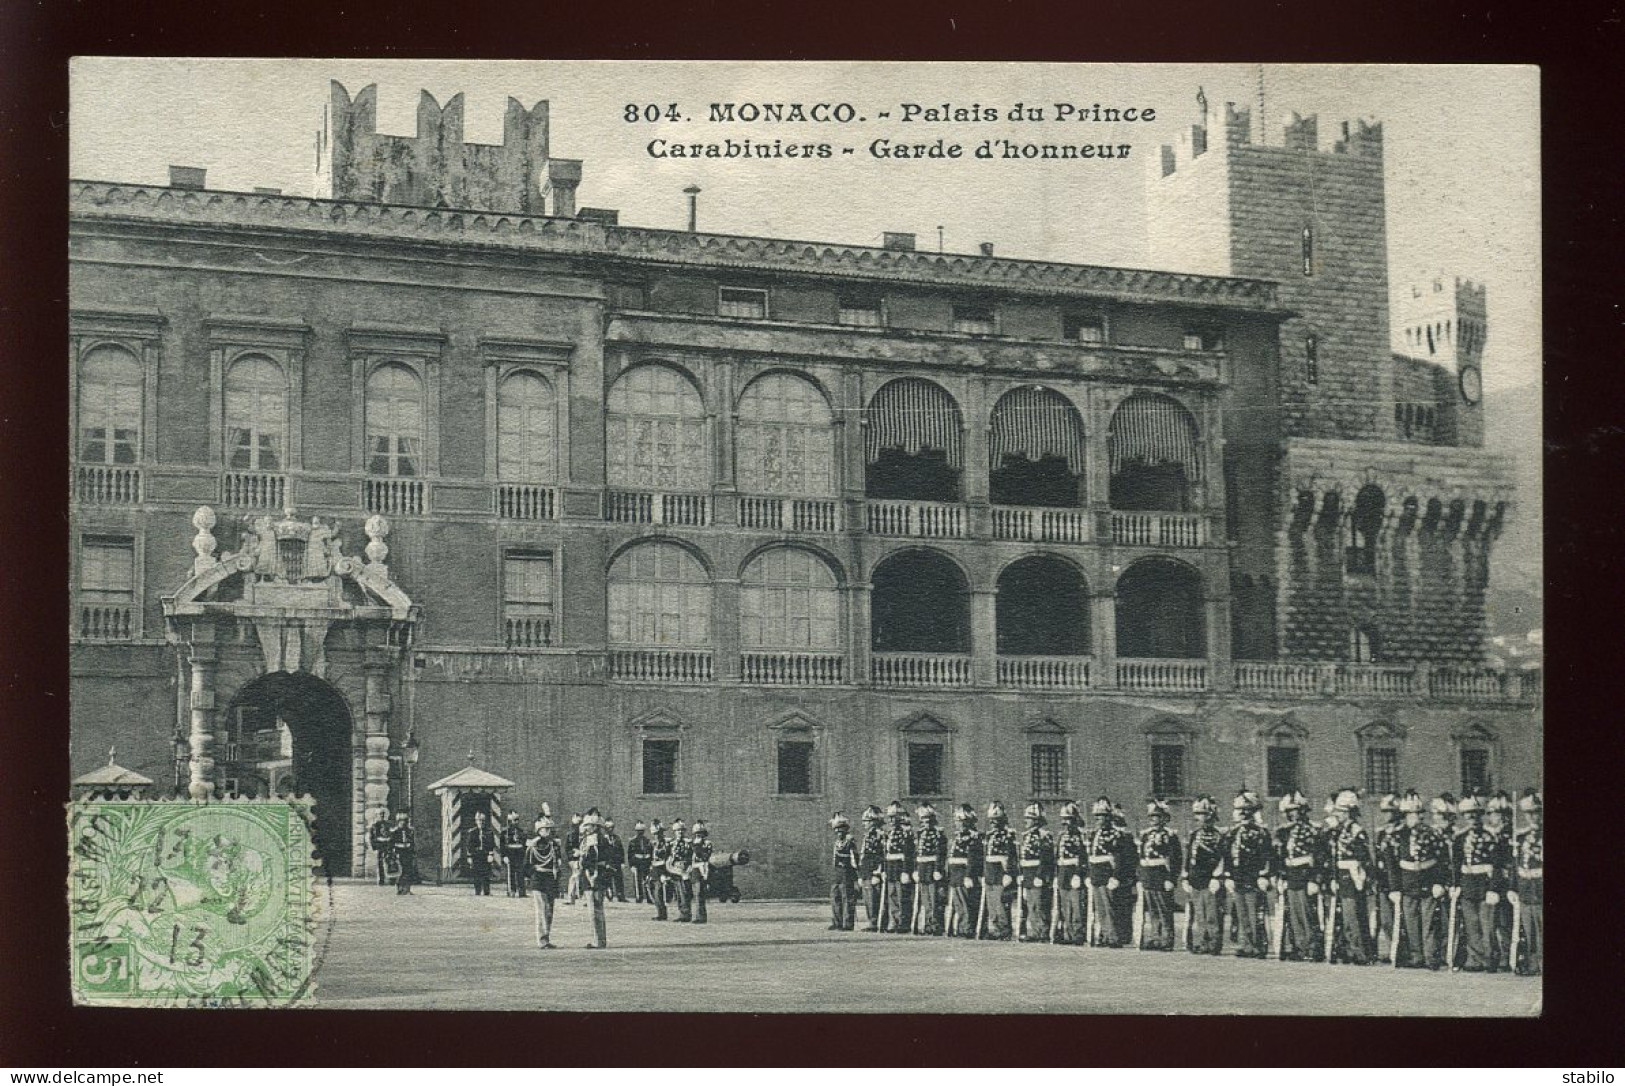 MONACO - PALAIS DU PRINCE, CARABINIERS, GARDE D'HONNEUR - TIMBRE - Prince's Palace